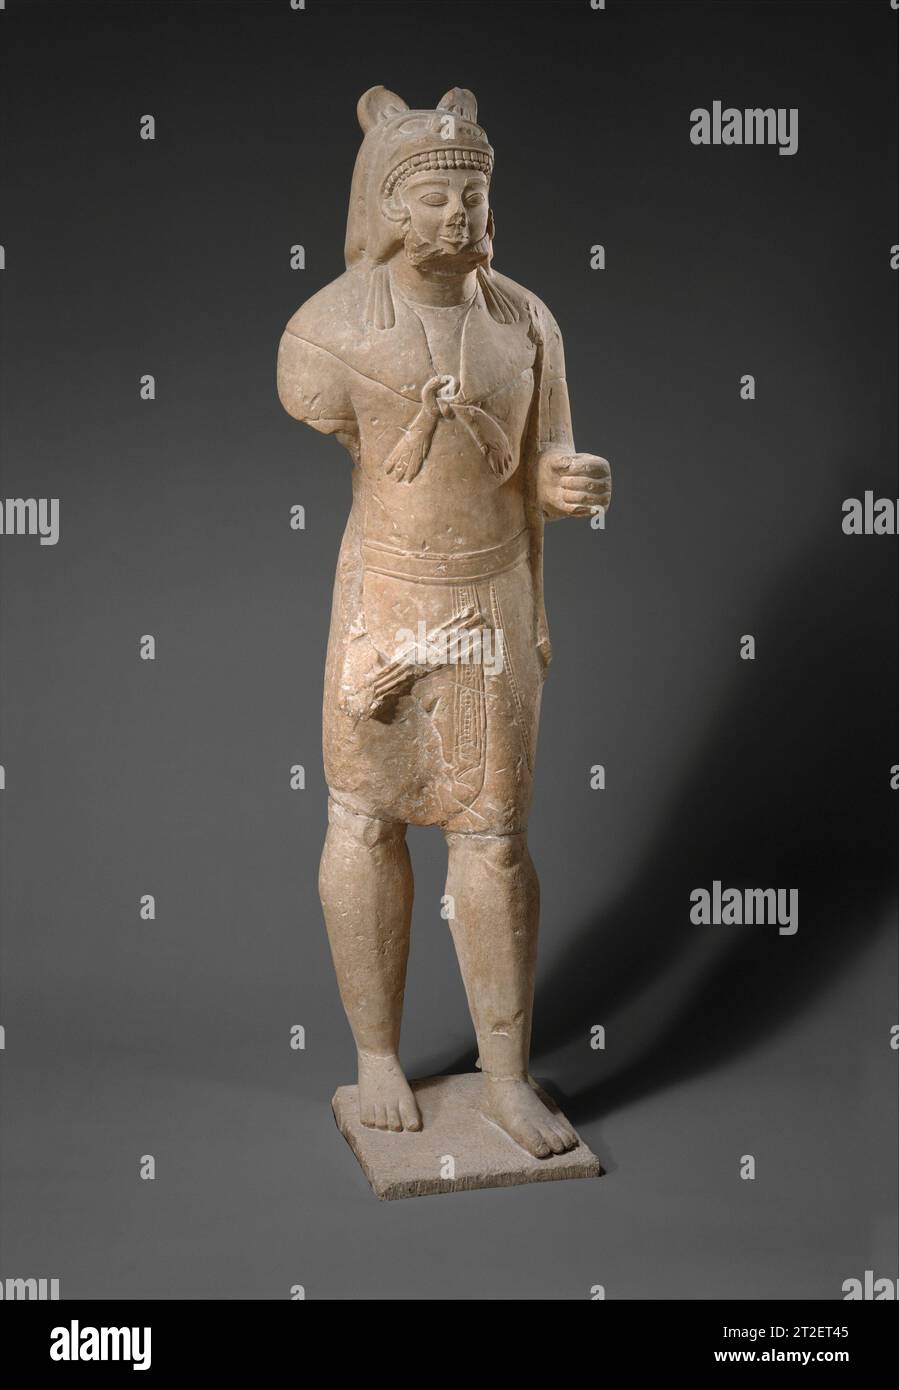 Kalkstein Herakles Cypriot Ca. 530–520 v. Chr. wurde die Statue von Cesnolas „Restauratoren“ erheblich umgebaut, sodass zahlreiche Merkmale des Originals nicht mehr klar sind. Der richtige linke Arm und die Beine wurden sicher wieder befestigt; die ursprüngliche Position des rechten Arms wurde ebenfalls verdeckt. Herakles trägt eine Tunika, einen Gürtel, einen modifizierten Kilt und ein Löwenfell. In seiner linken Hand hielt er einen Bogen, von dem die Hälfte an seinem Körper erscheint. (Der Gurken-förmige Club, den er über Jahrzehnte verstand, wurde in der Neuzeit hinzugefügt und wurde entfernt.) Auf seinem rechten Oberschenkel befinden sich die Enden der Pfeile, die er in seinem Bohrfahrzeug hielt Stockfoto